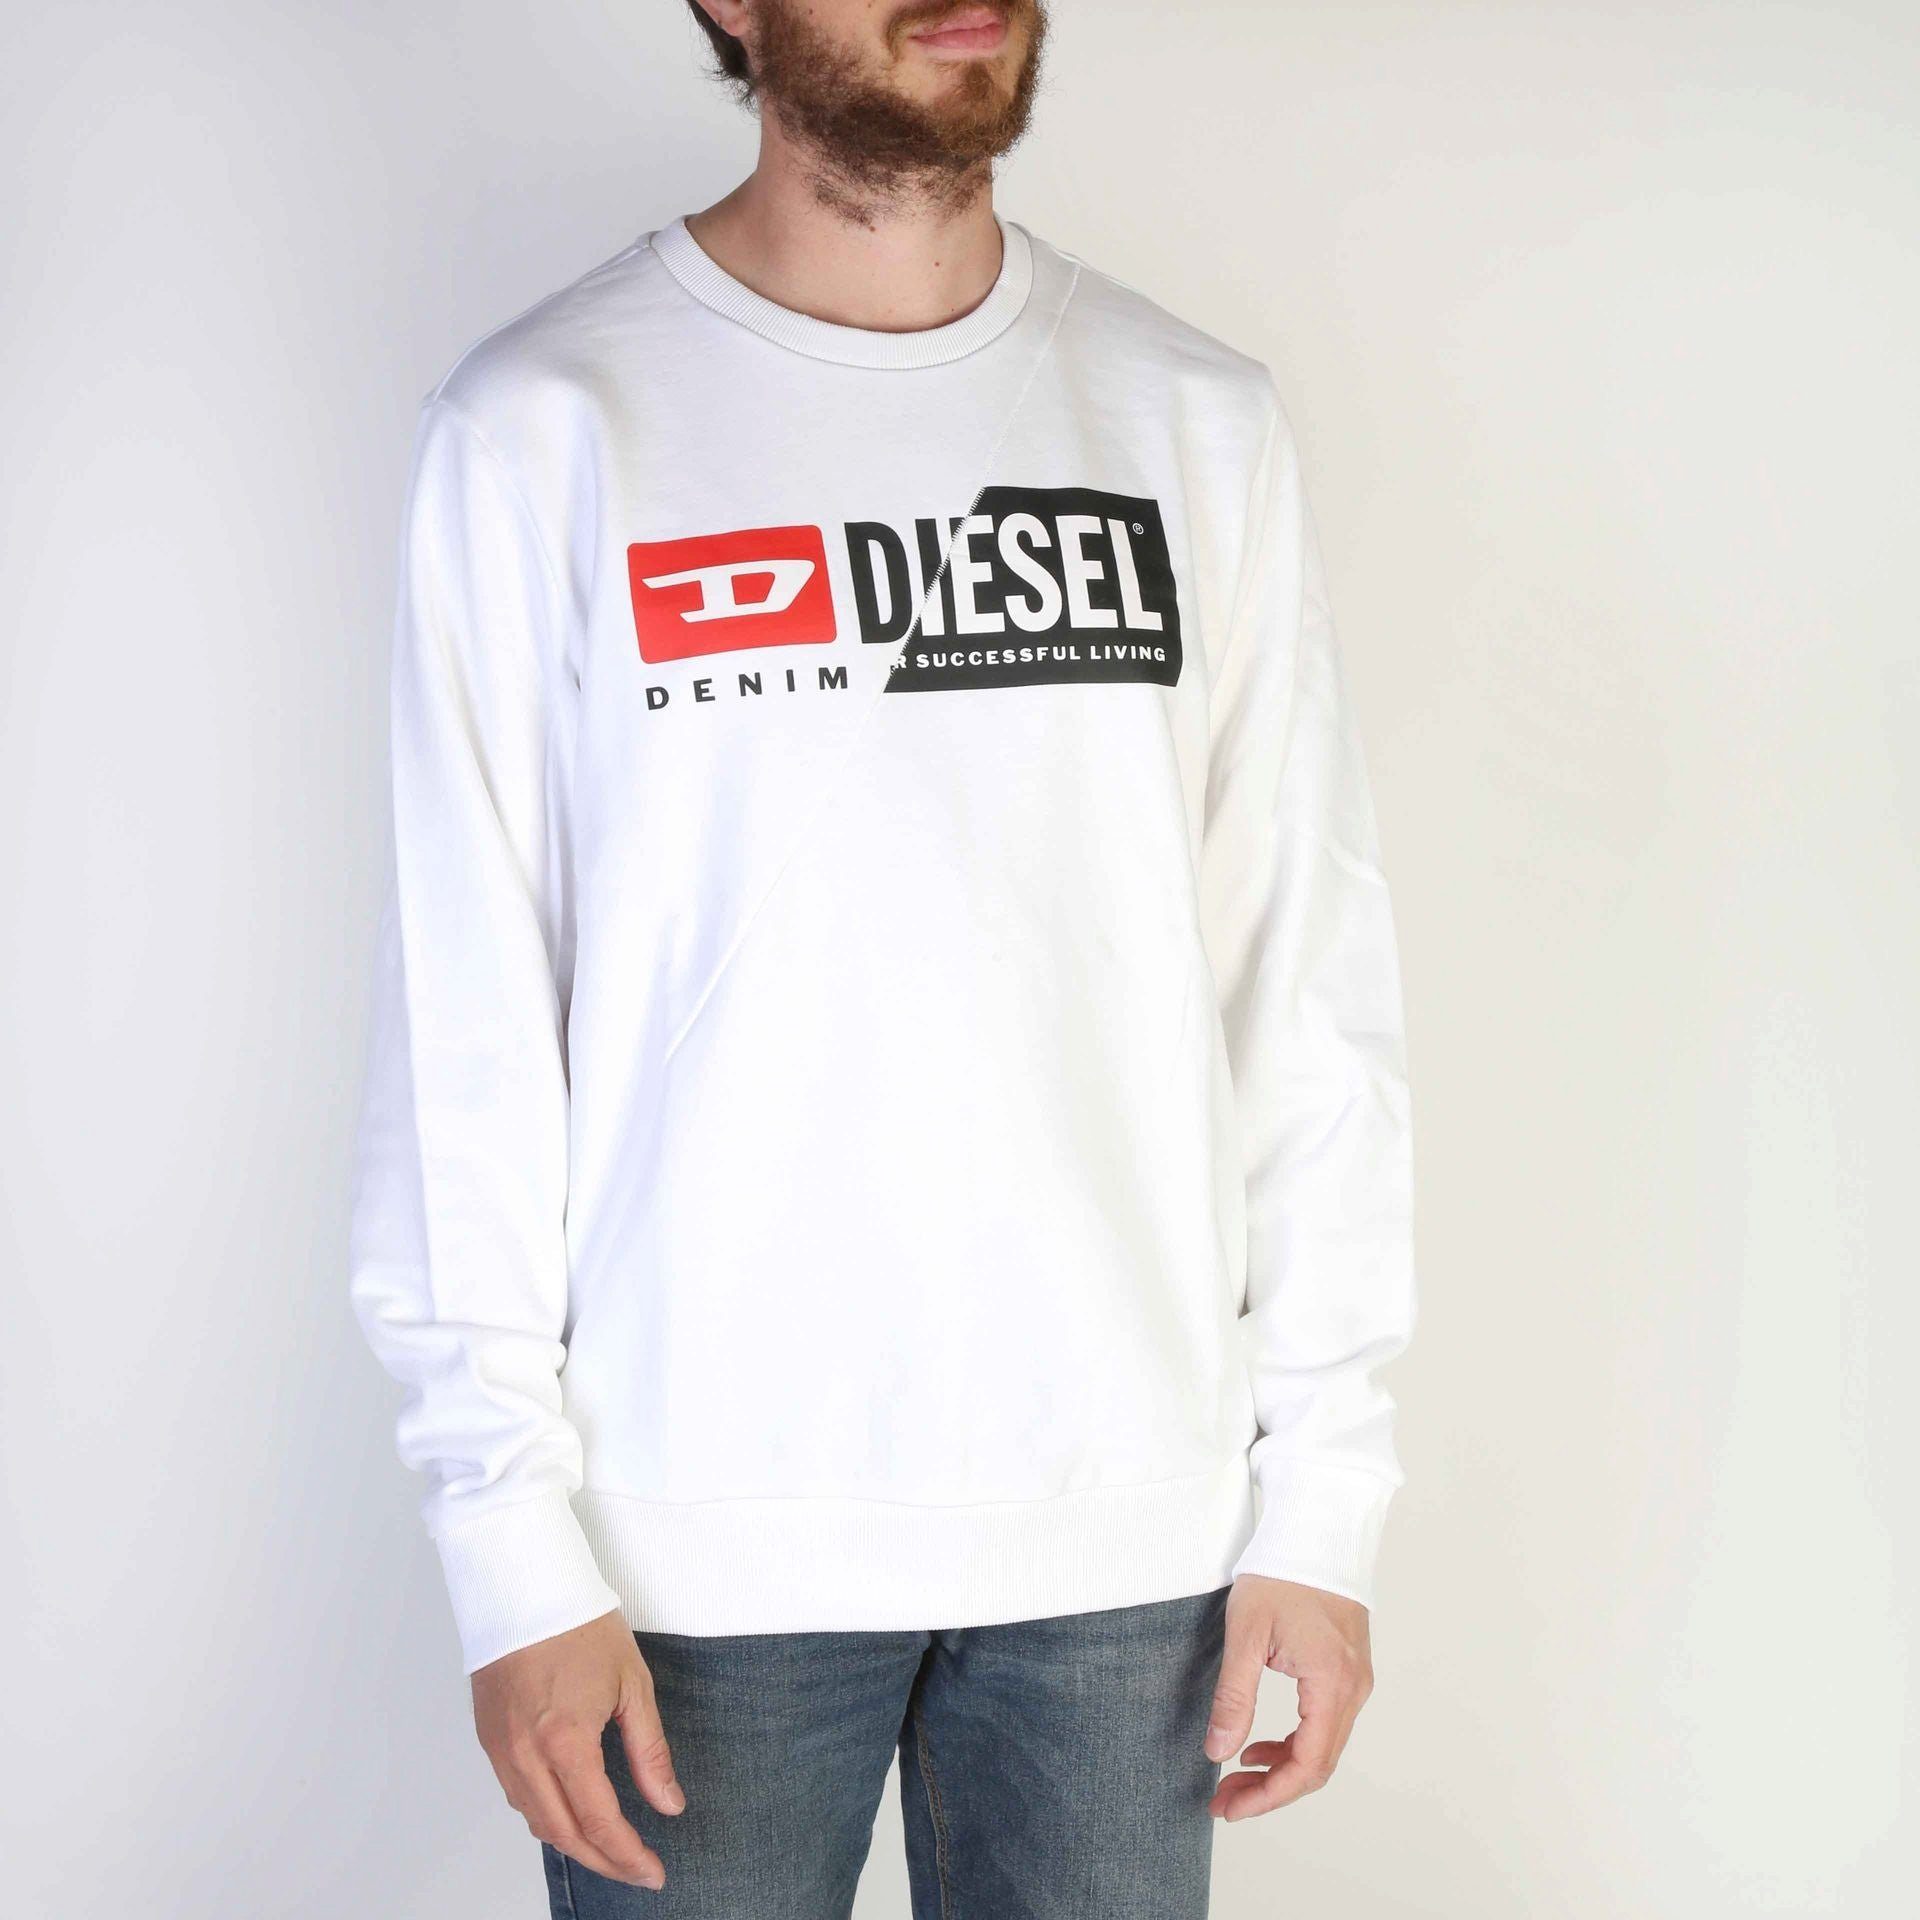 Diesel Sweatshirt Sweatshirt Weiß Diesel Frühjahr/Sommer Kollektion, Diesel Sweatshirt Komfort und Ihr - Herren neues wartet! Stil